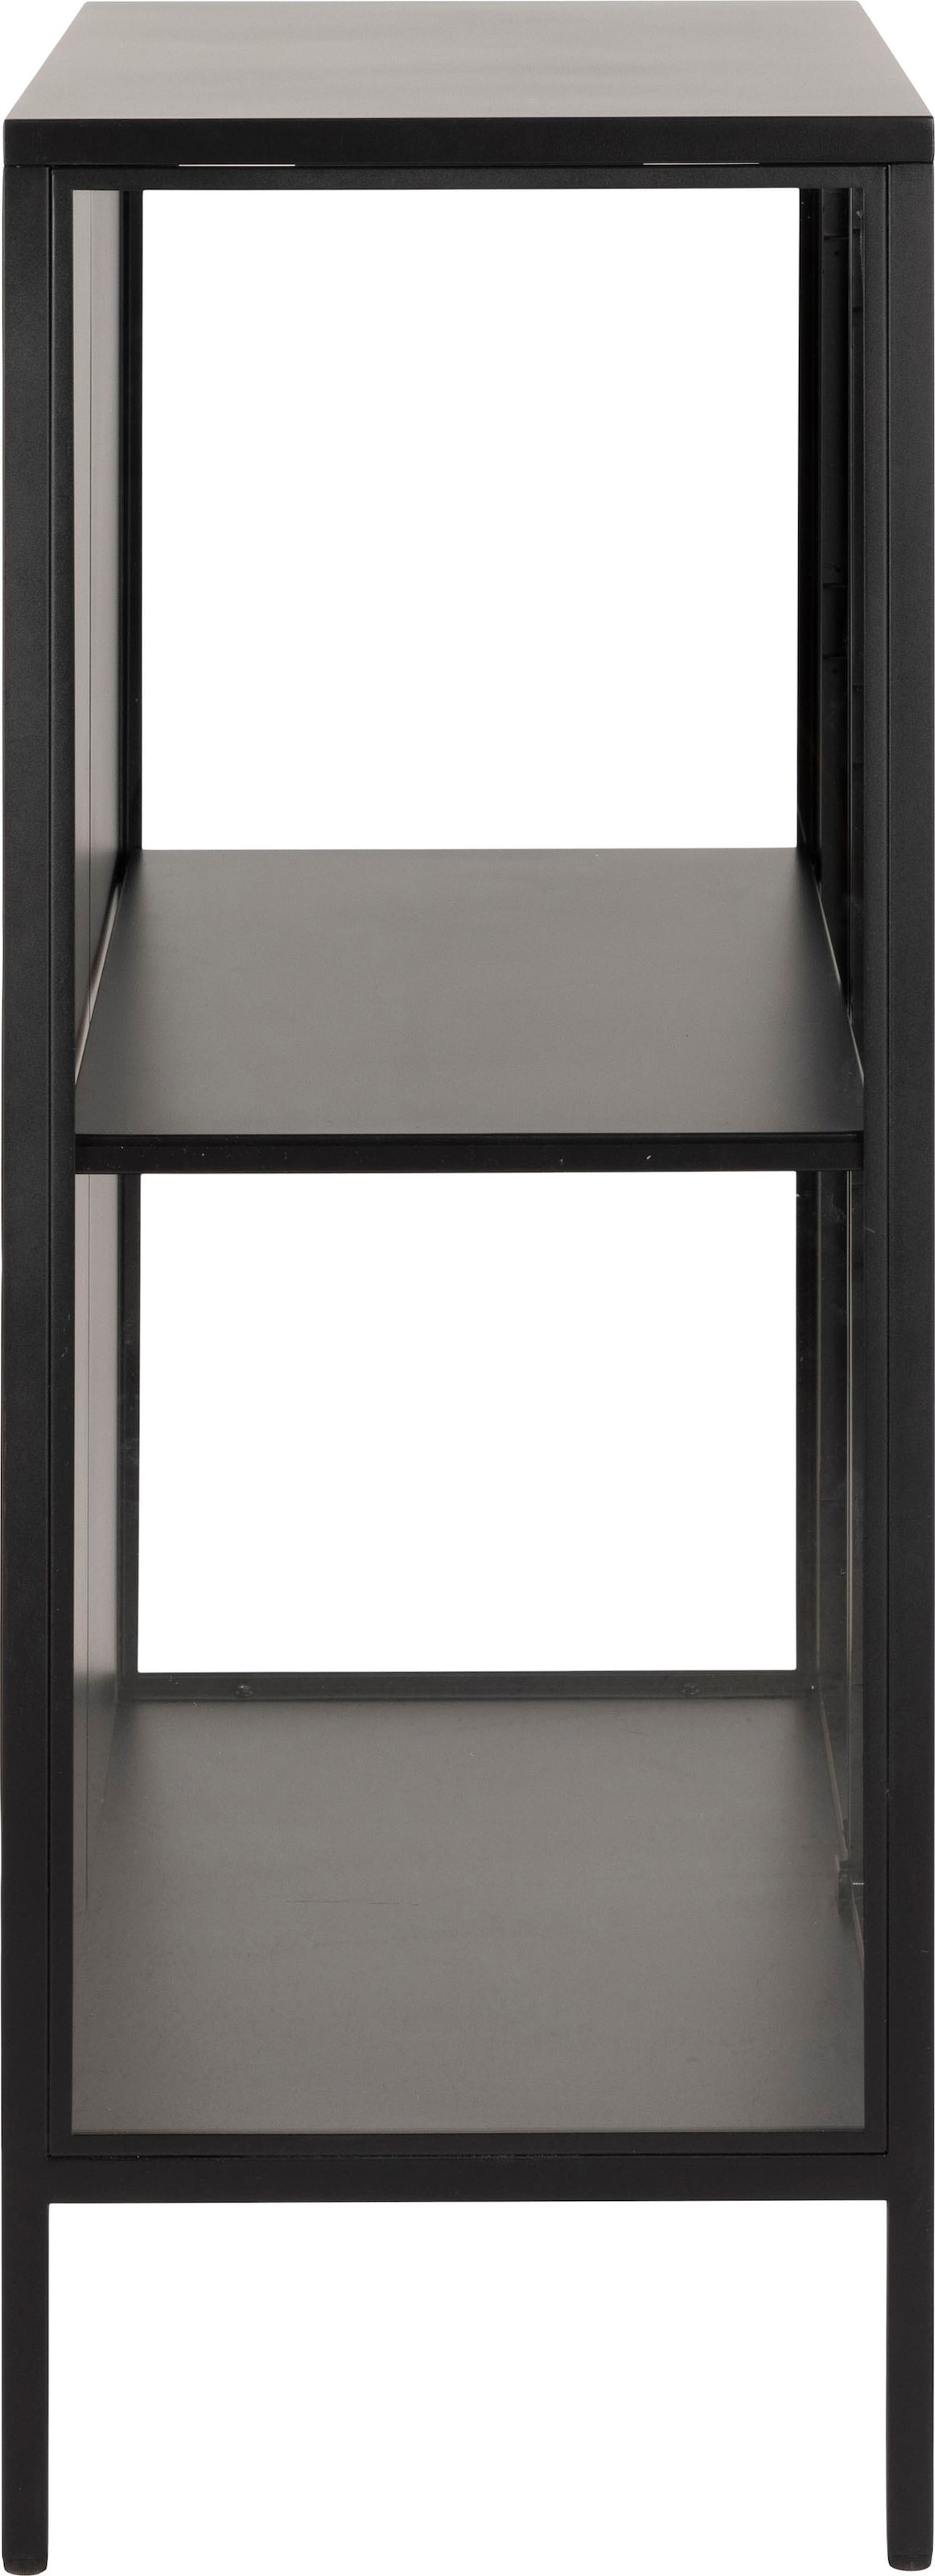 ACTONA GROUP Vitrine »New York«, schwarzes Metall mit Glastüren, 2 Fächern, Höhe 100 cm